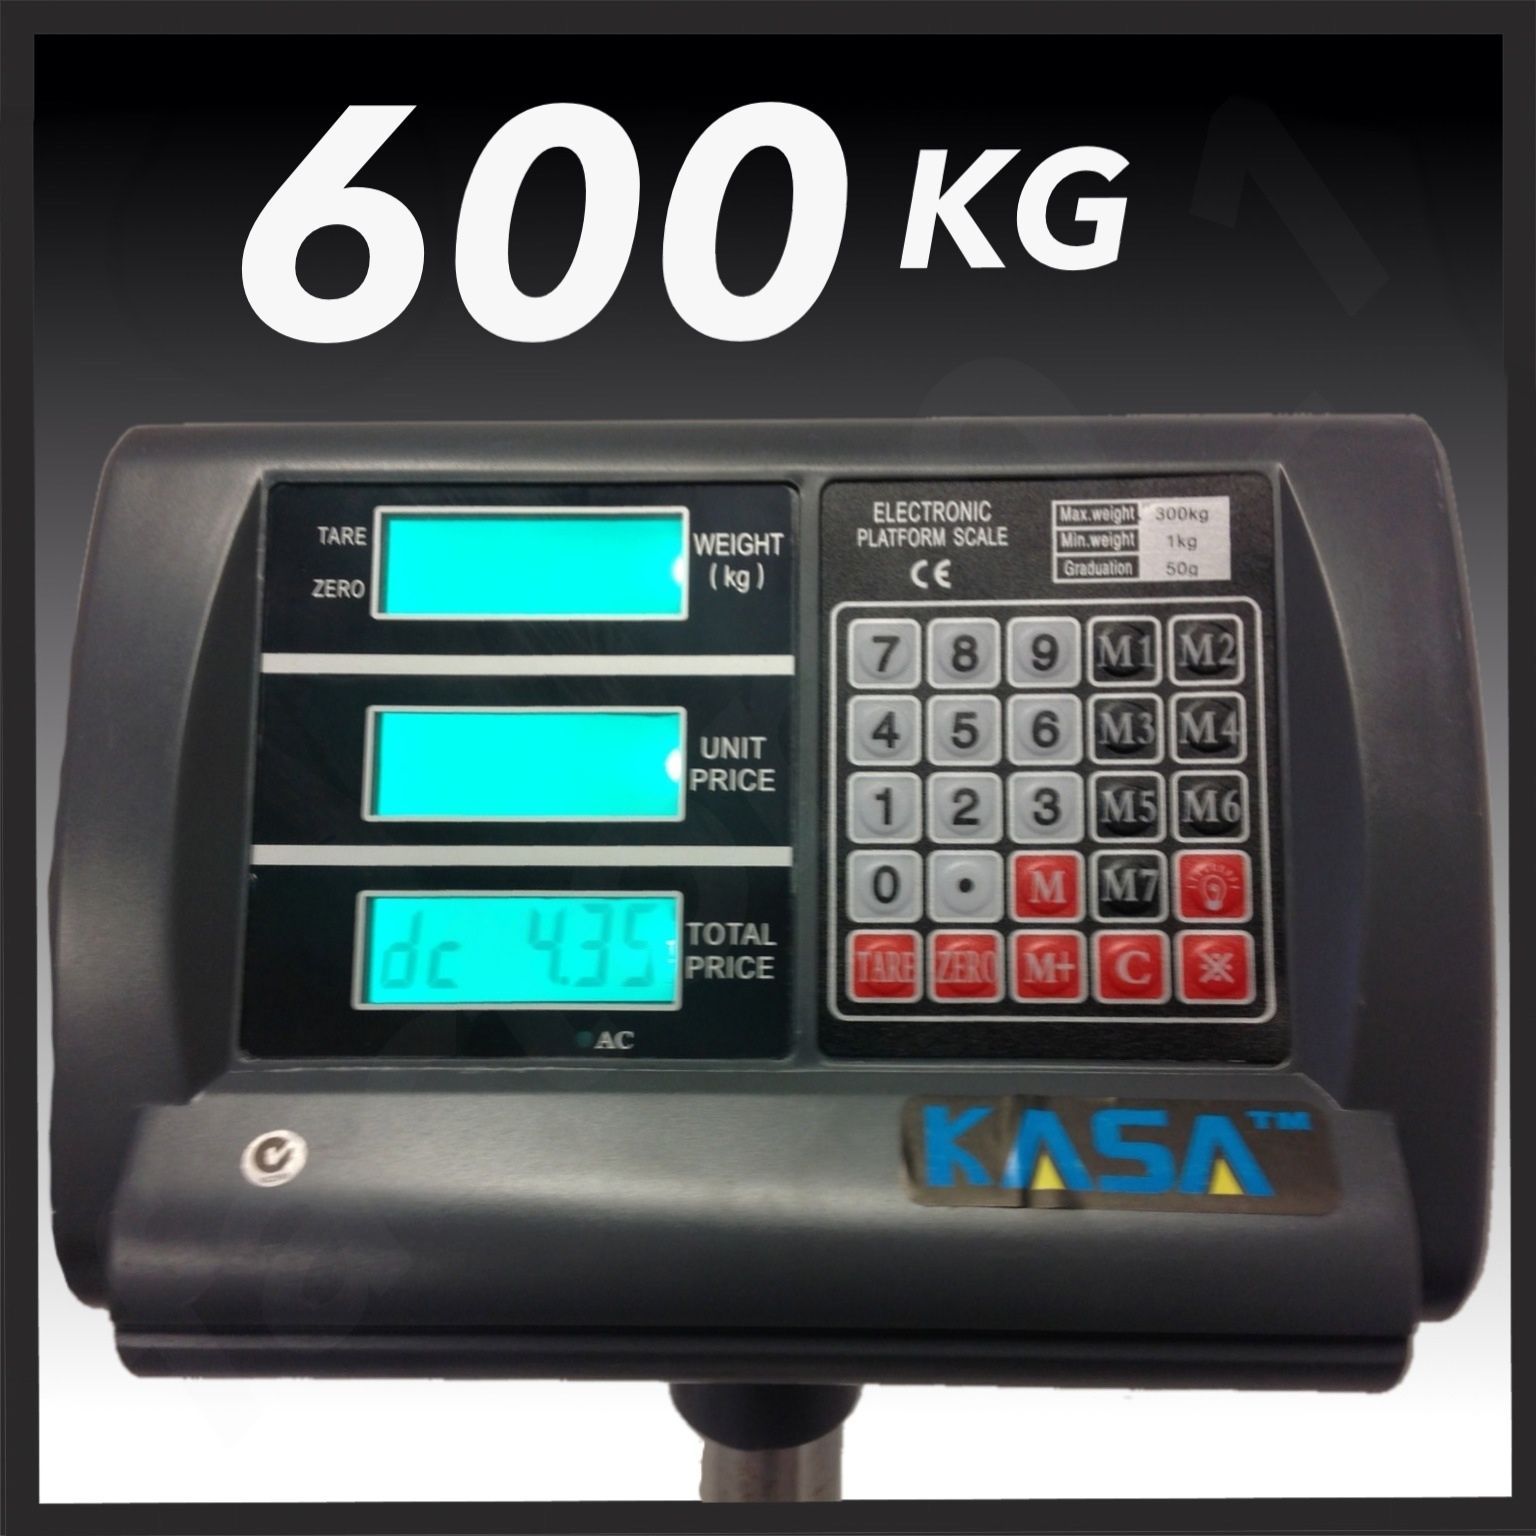 KASA 600kg Electronic Digital Platform Computing Price Scale Weight